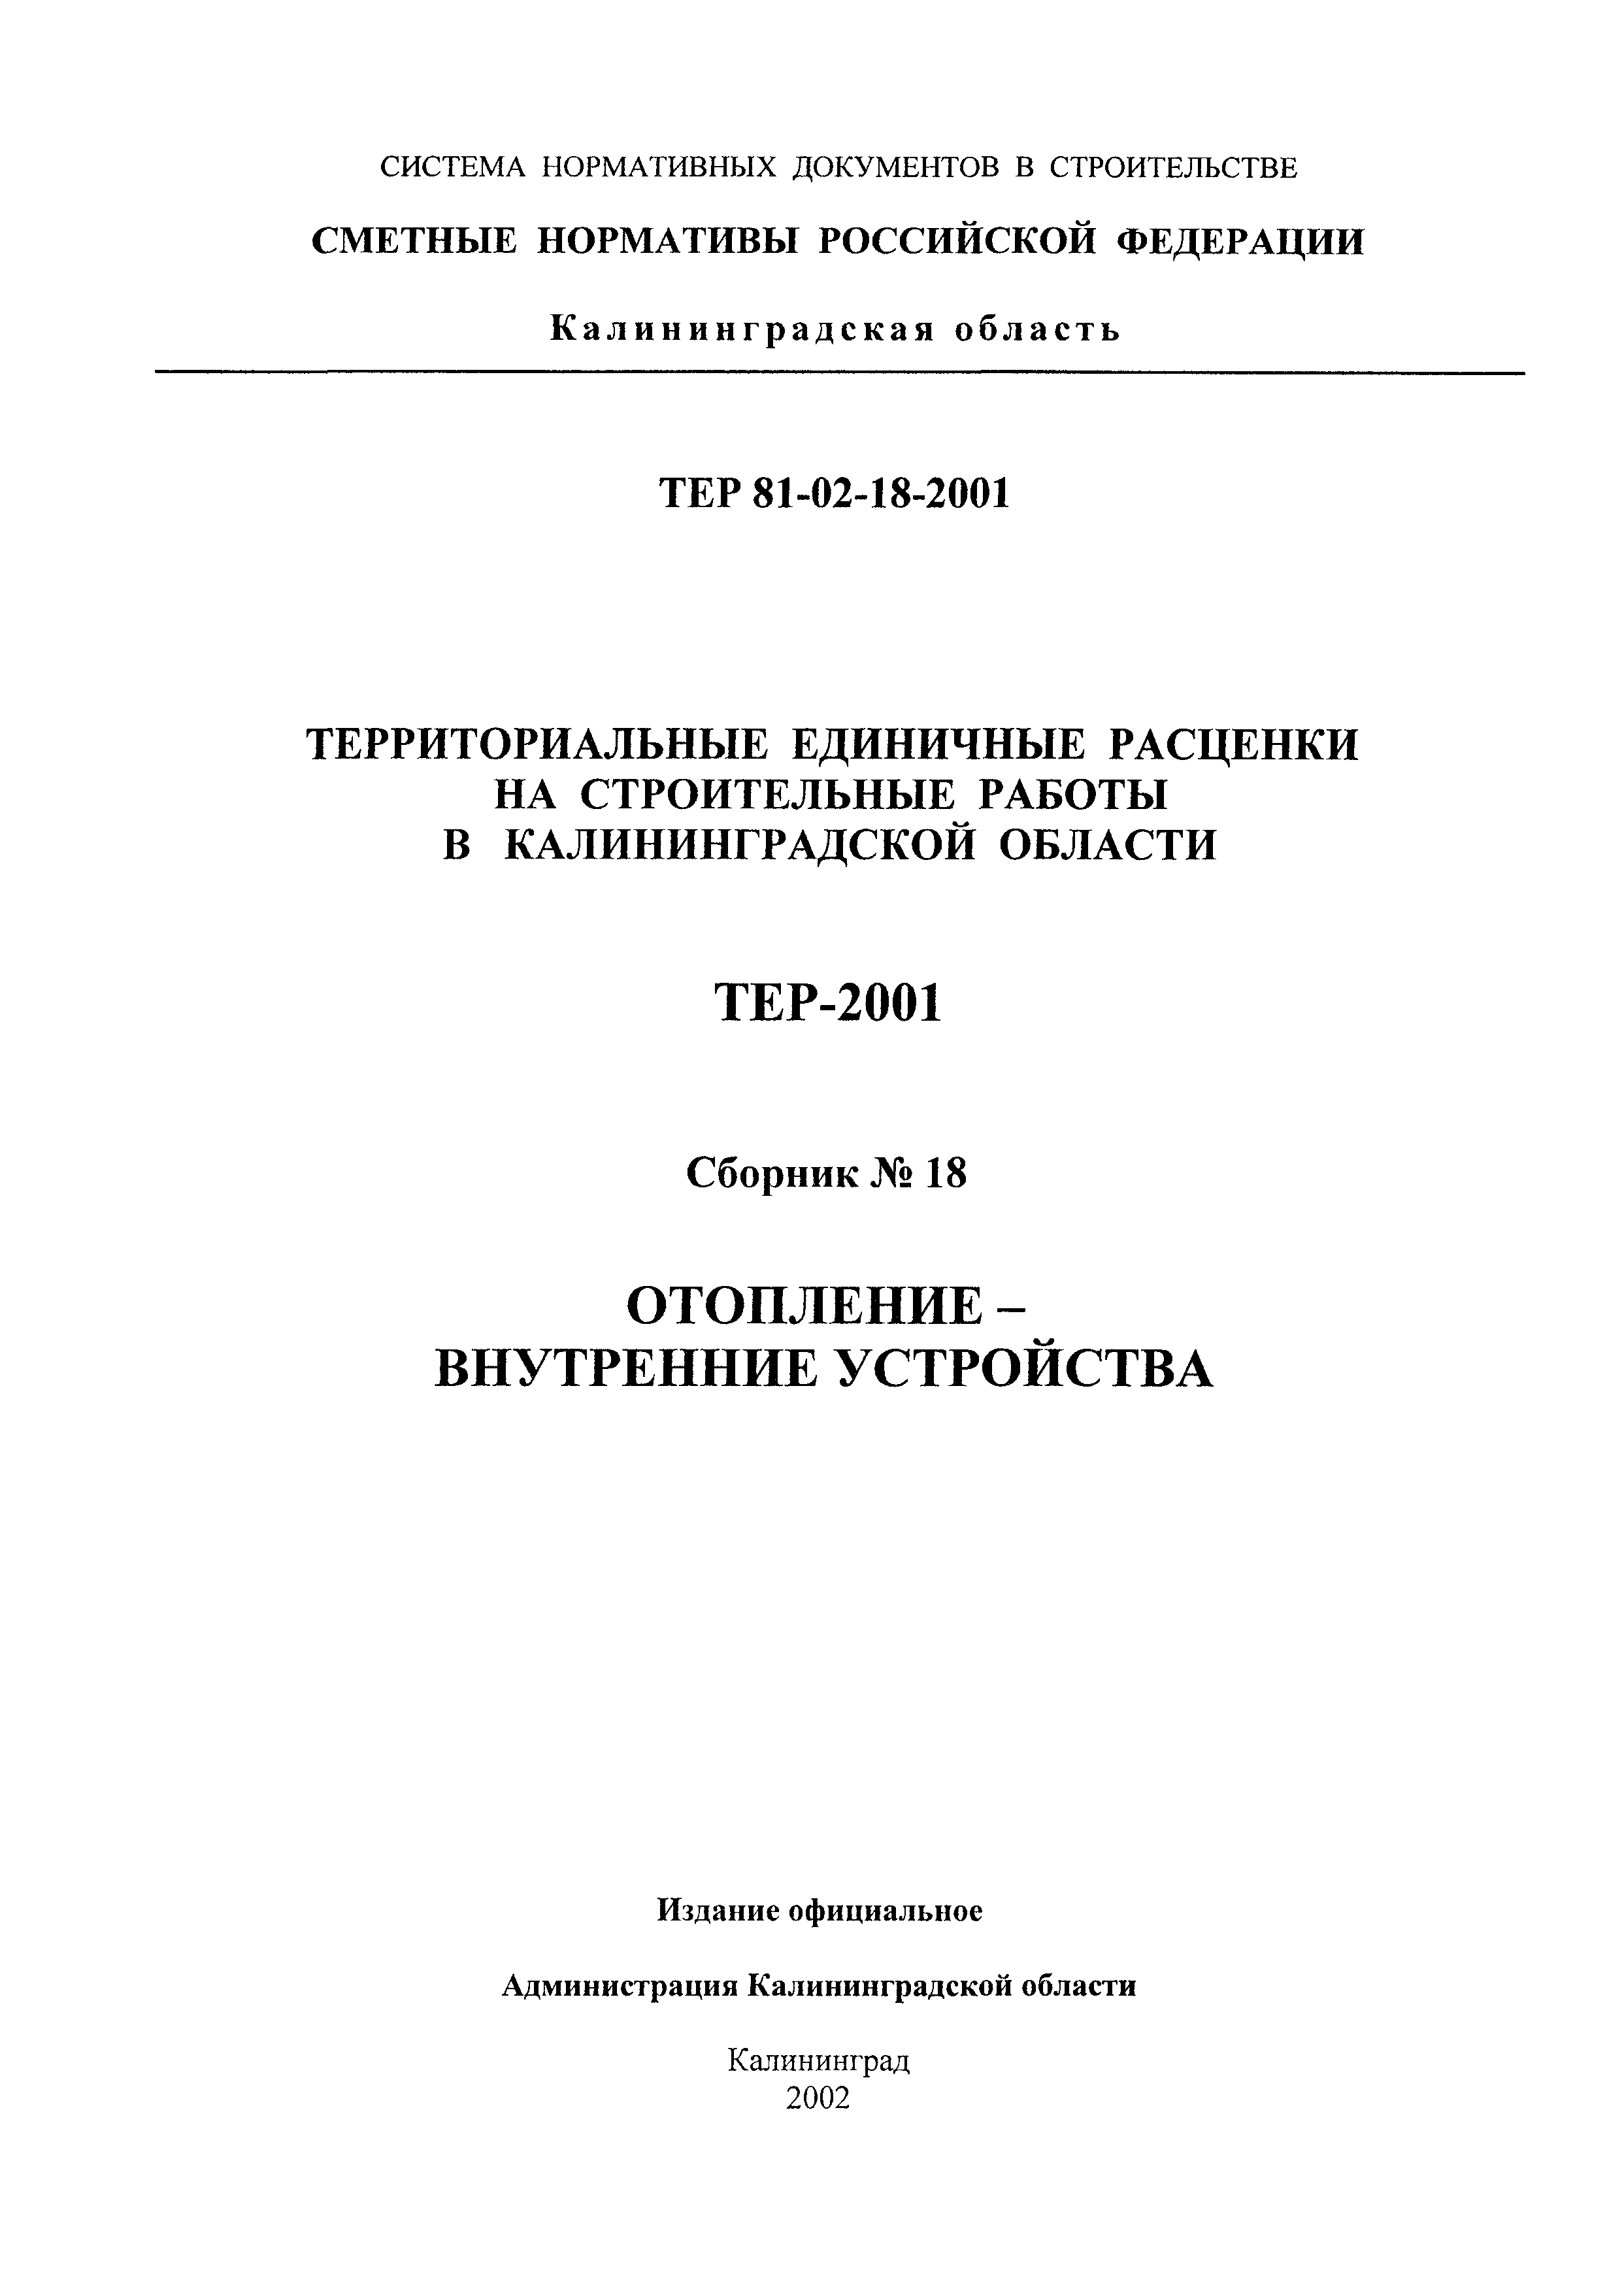 ТЕР Калининградская область 2001-18